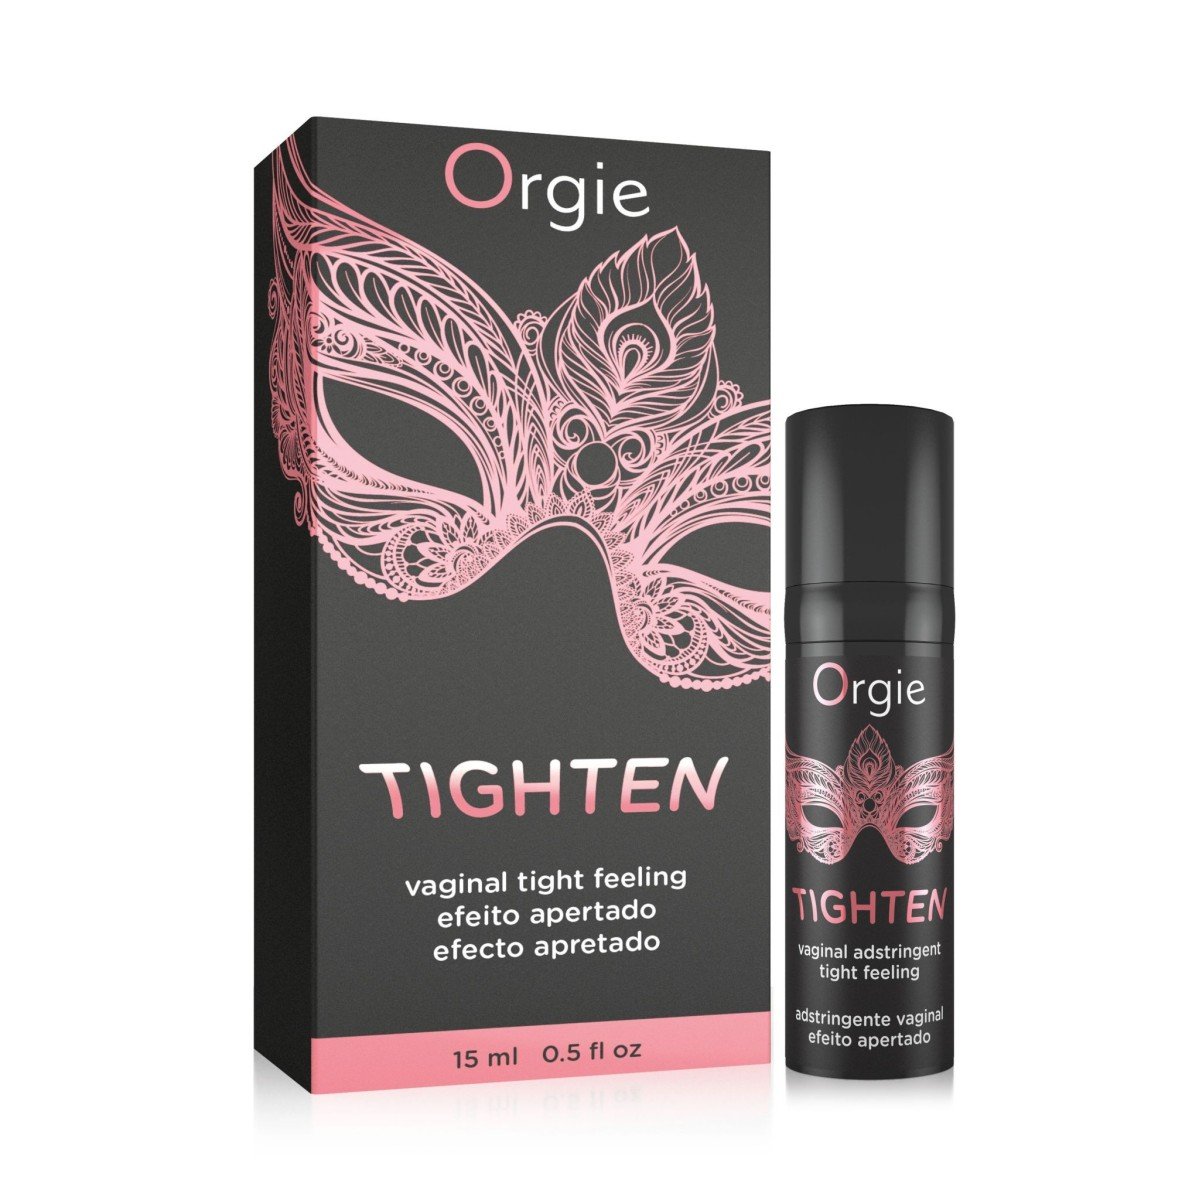 Orgie Tighten Gel 15 ml, intimní vaginální gel se zpevňujícími účinky